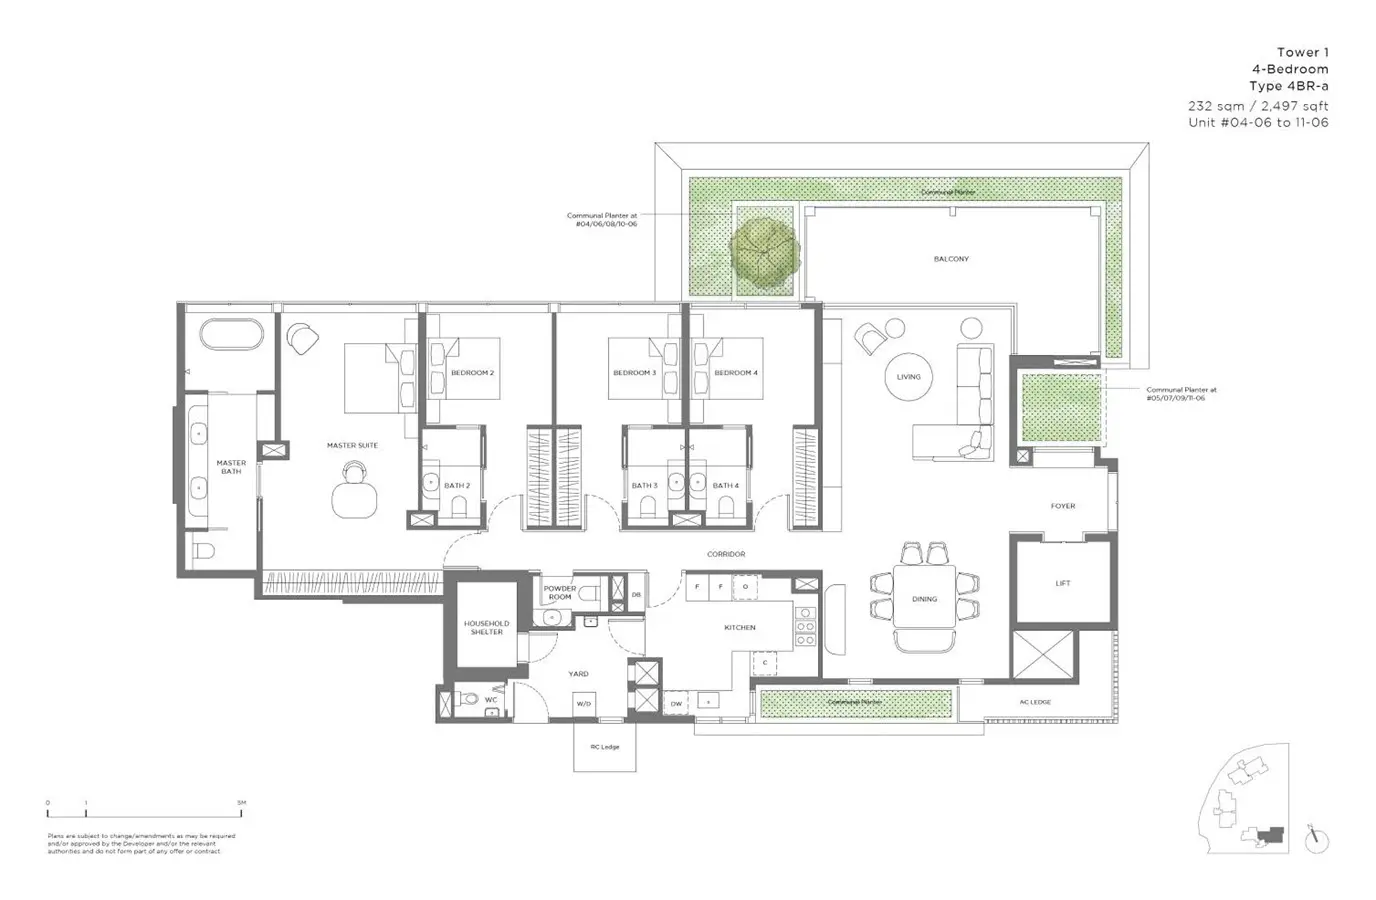 15 Holland Hill - Floor Plan - 4 Bedroom 4BR-a